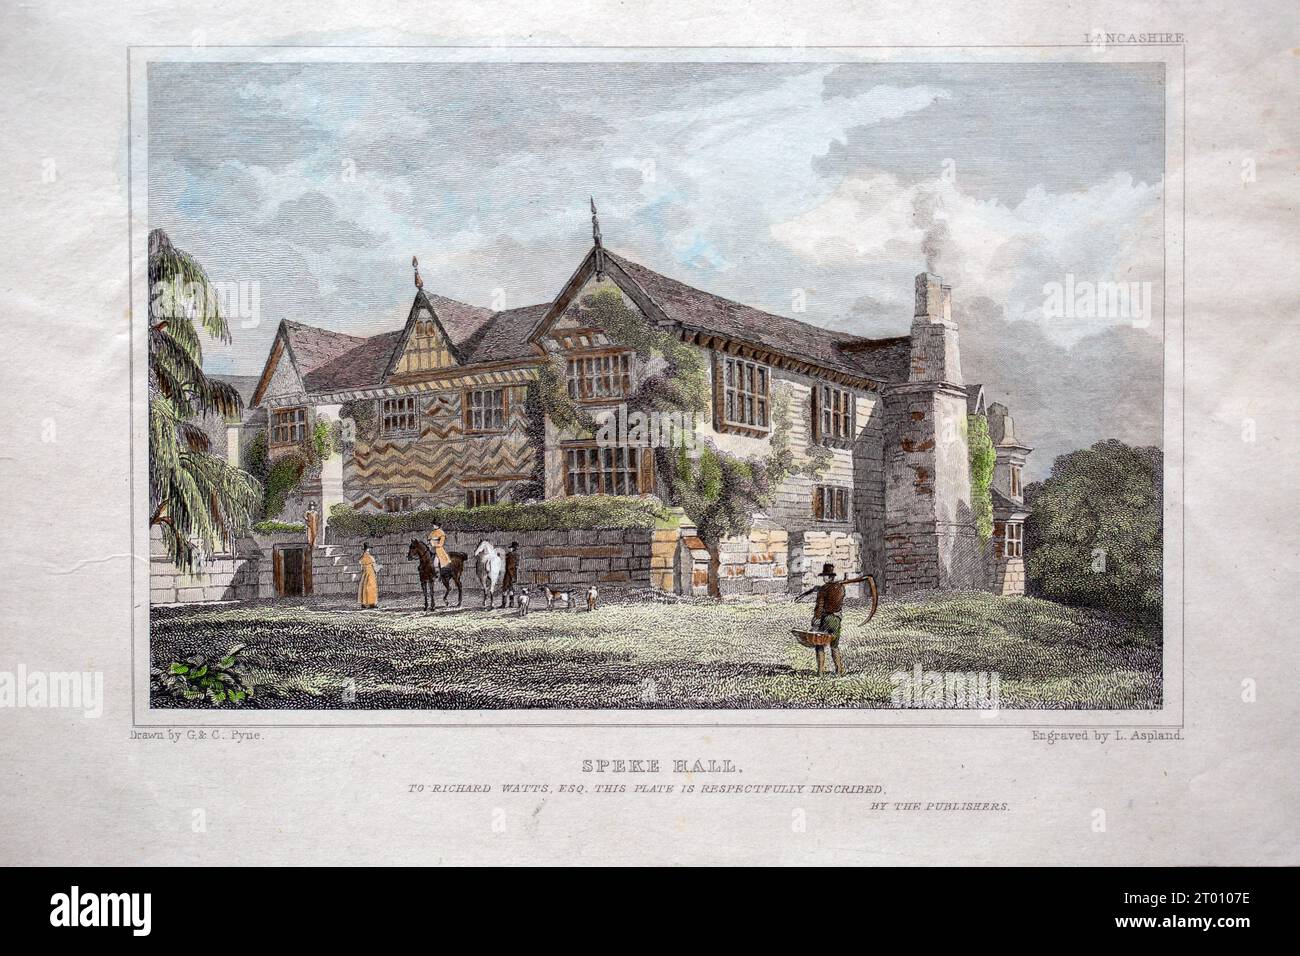 Incisione ottocentesca di Speke Hall, Lancashire, Inghilterra incisa da L Ashland, Foto Stock